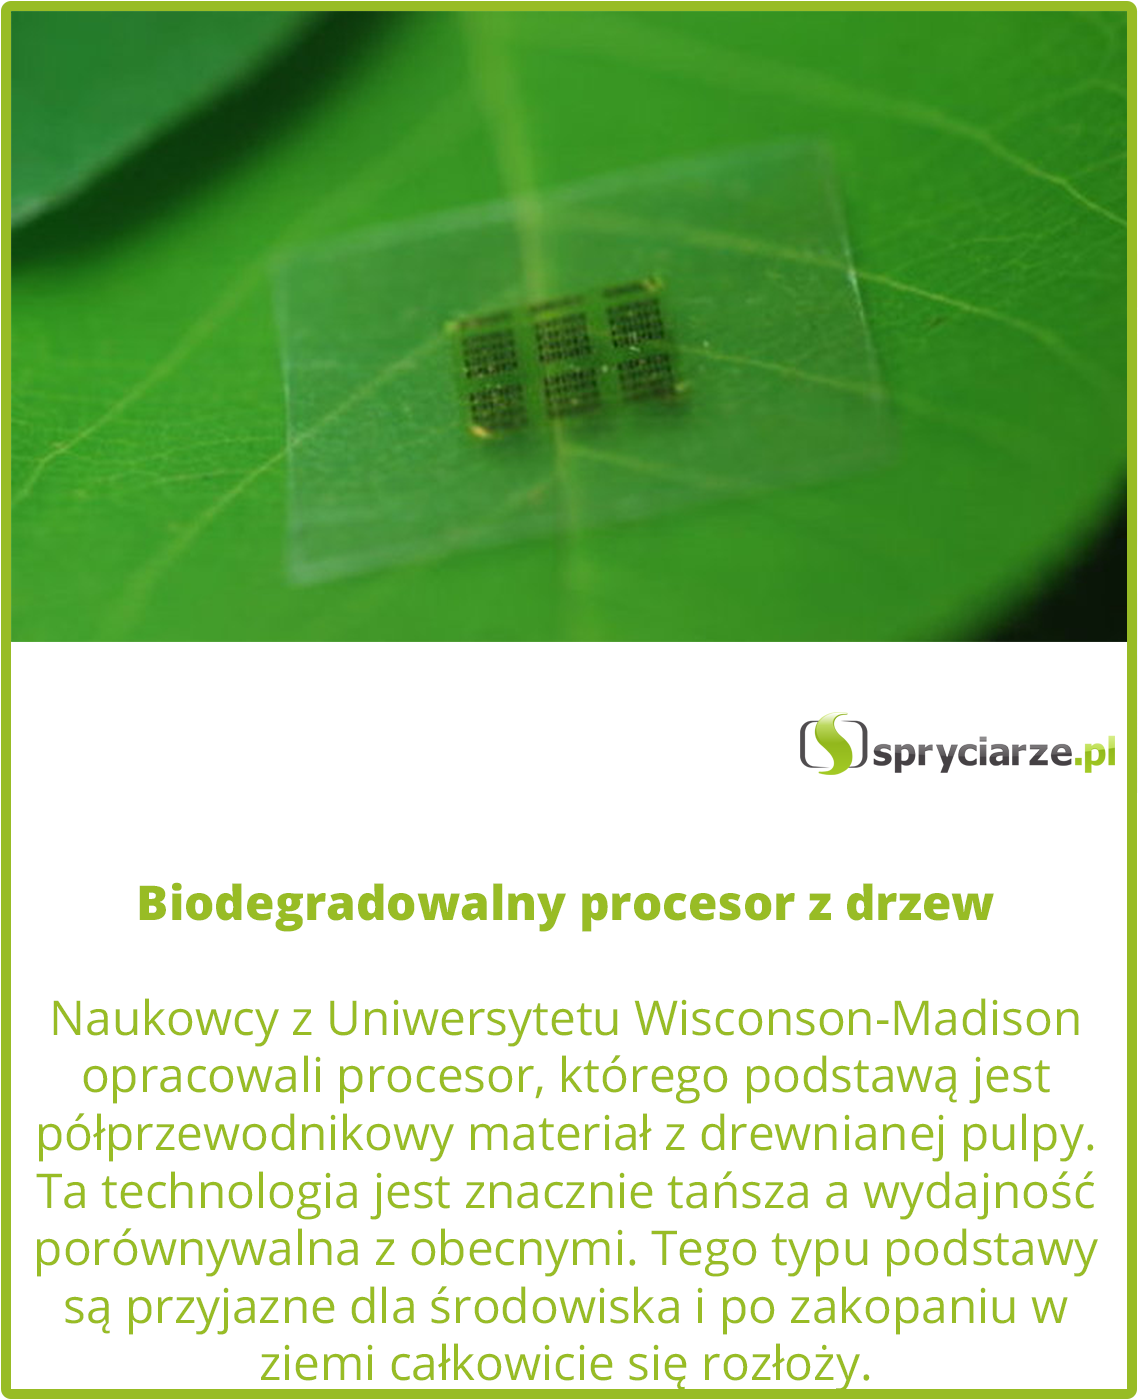 Biodegradowalny procesor z drzew